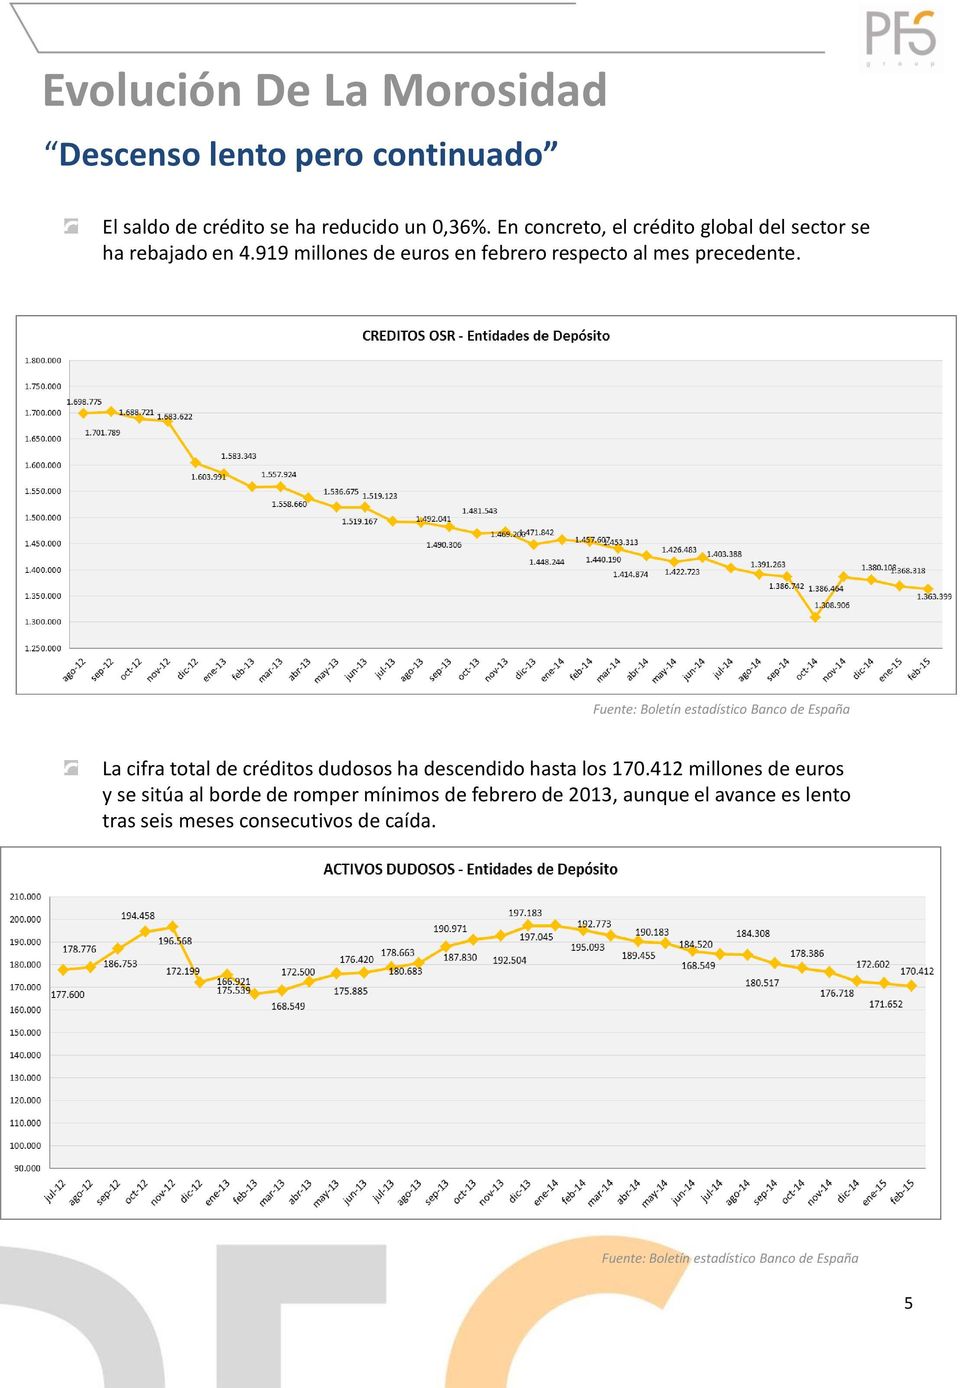 Fuente: Boletín estadístico Banco de España La cifra total de créditos dudosos ha descendido hasta los 170.